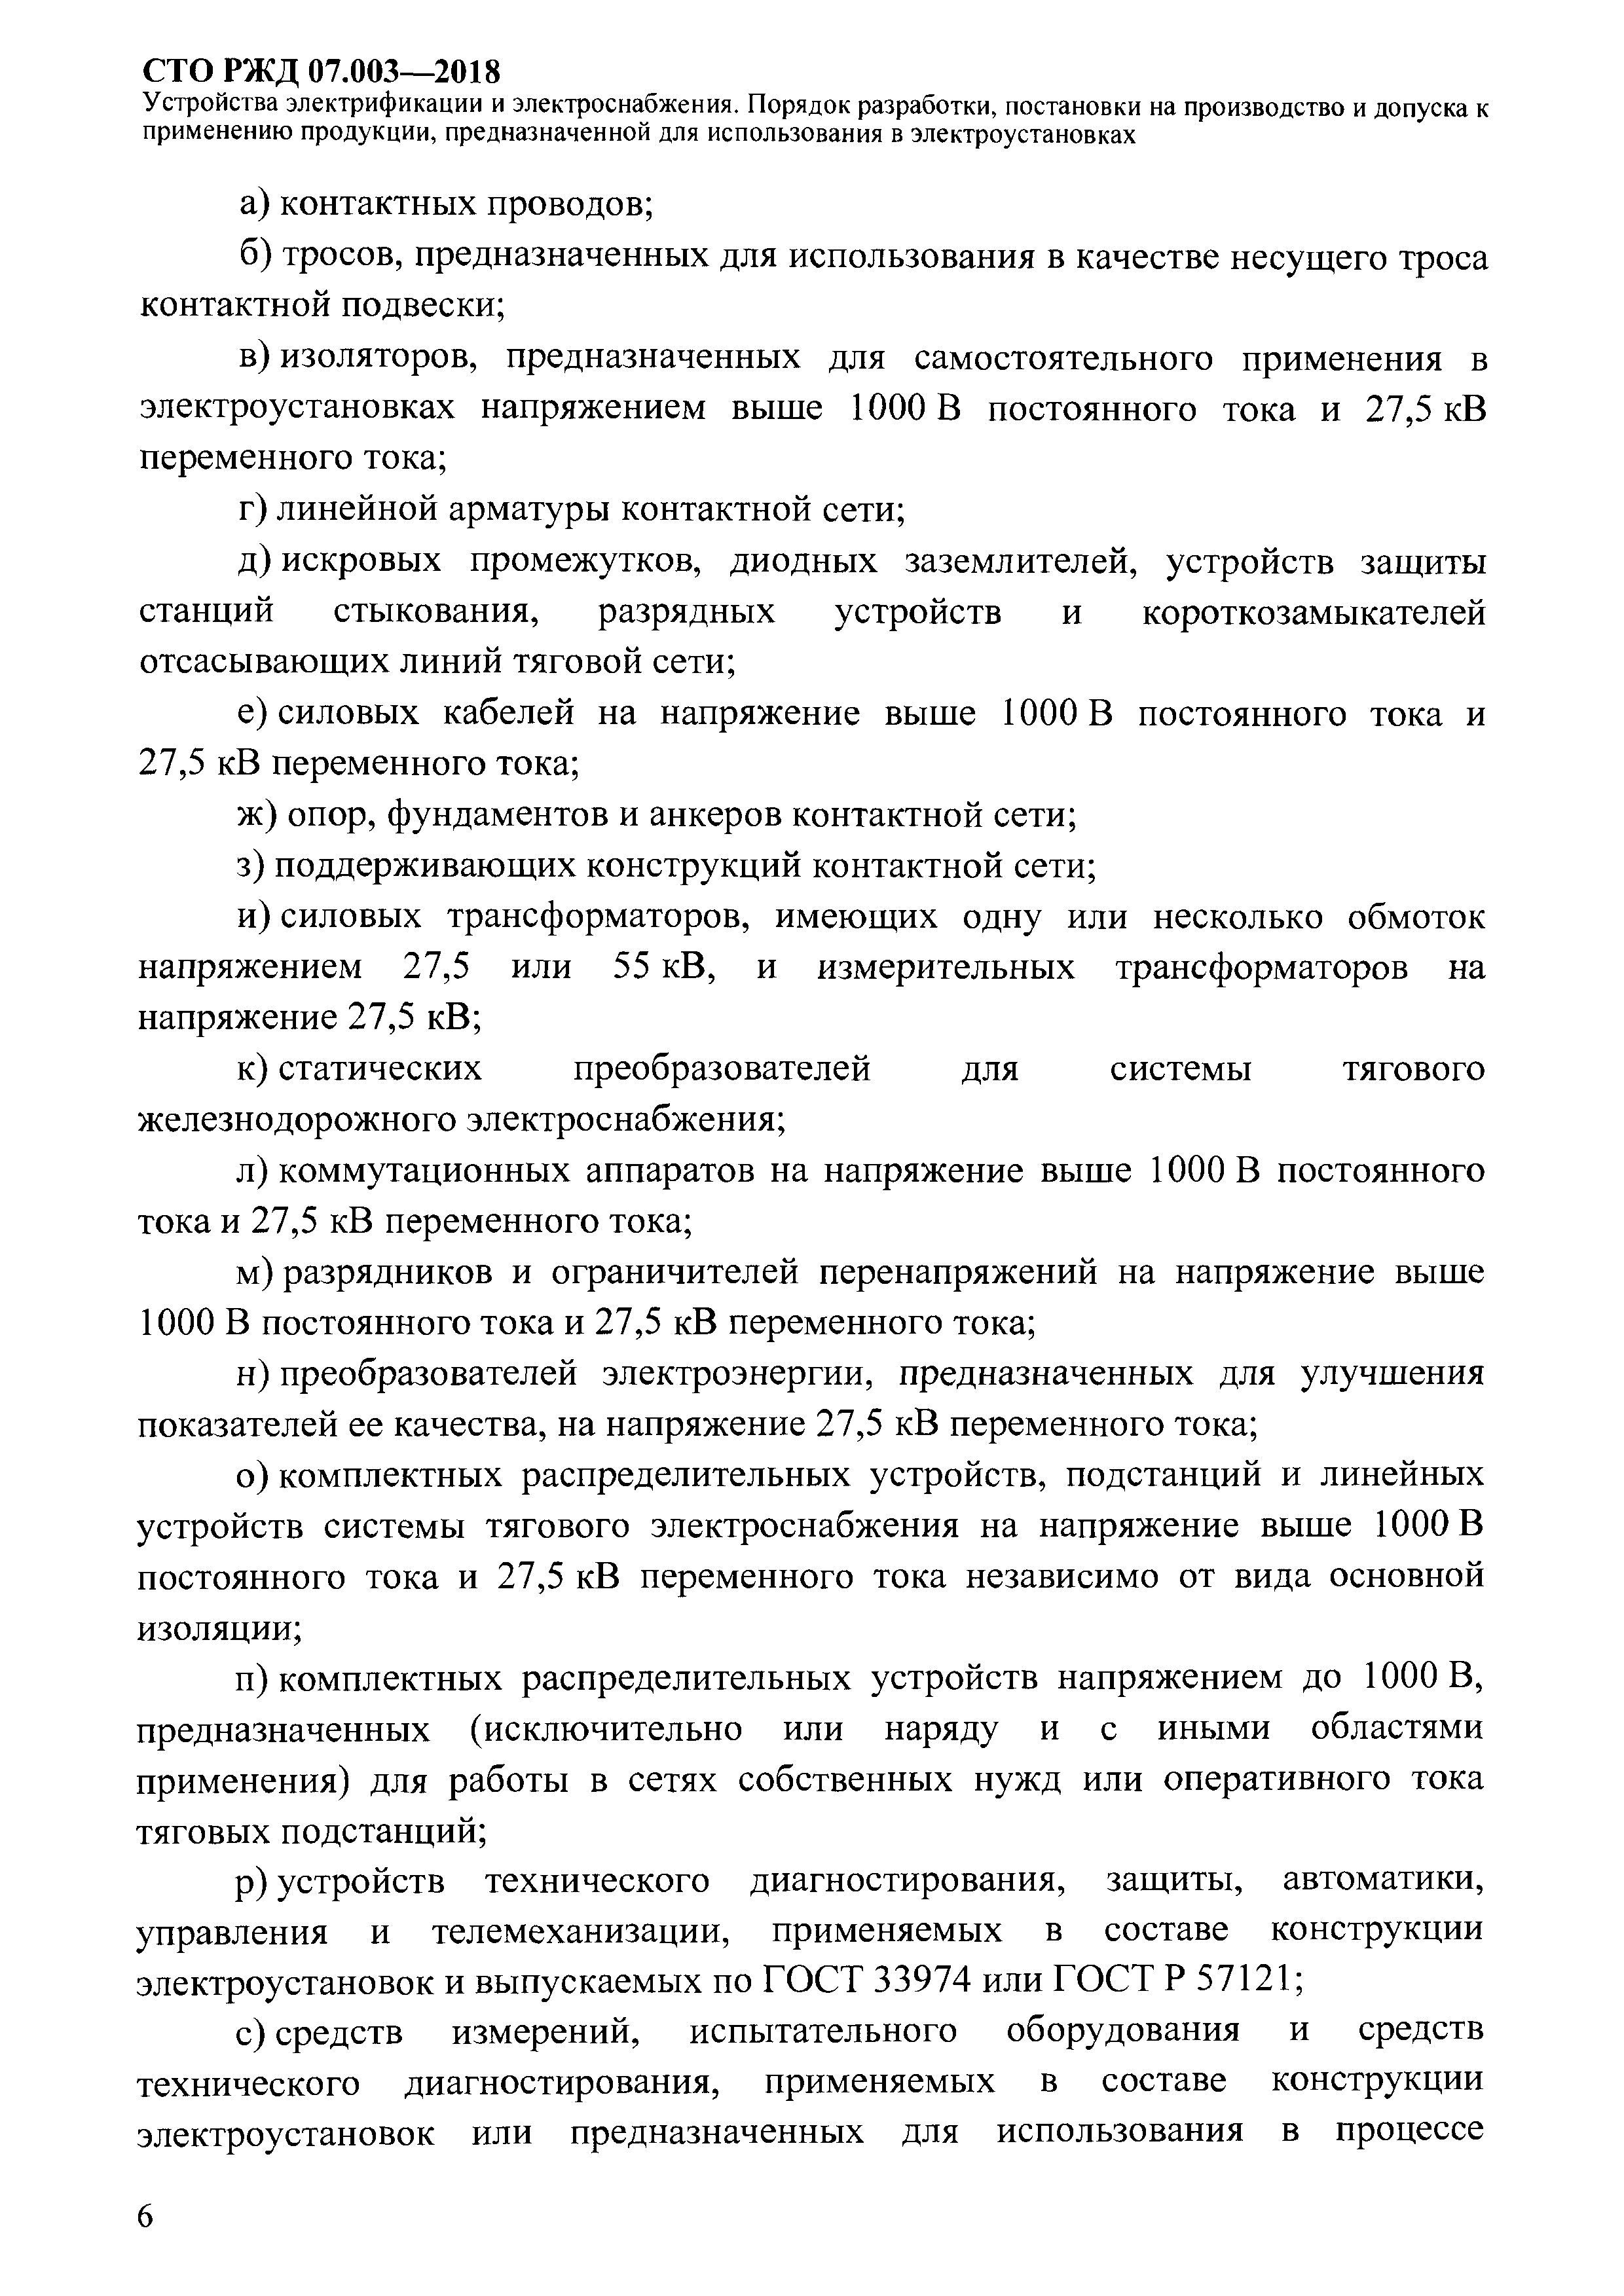 СТО РЖД 07.003-2018